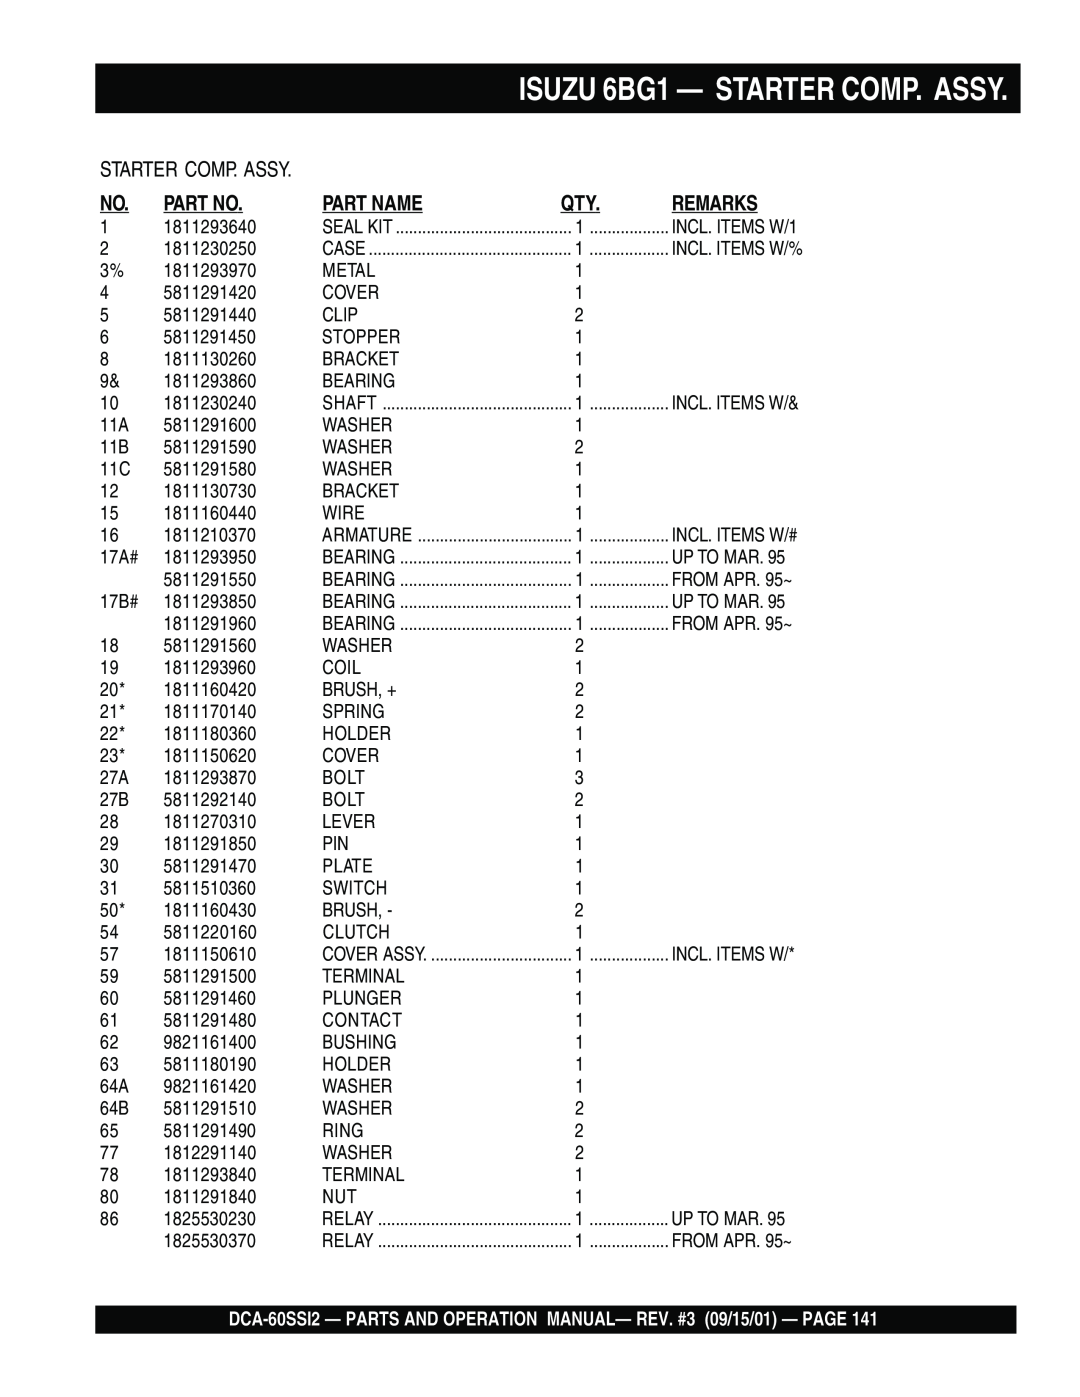 Multiquip DCA-60SS12 operation manual ISUZU 6BG1 — STARTER COMP. ASSY, Part No, Part Name, Remarks 